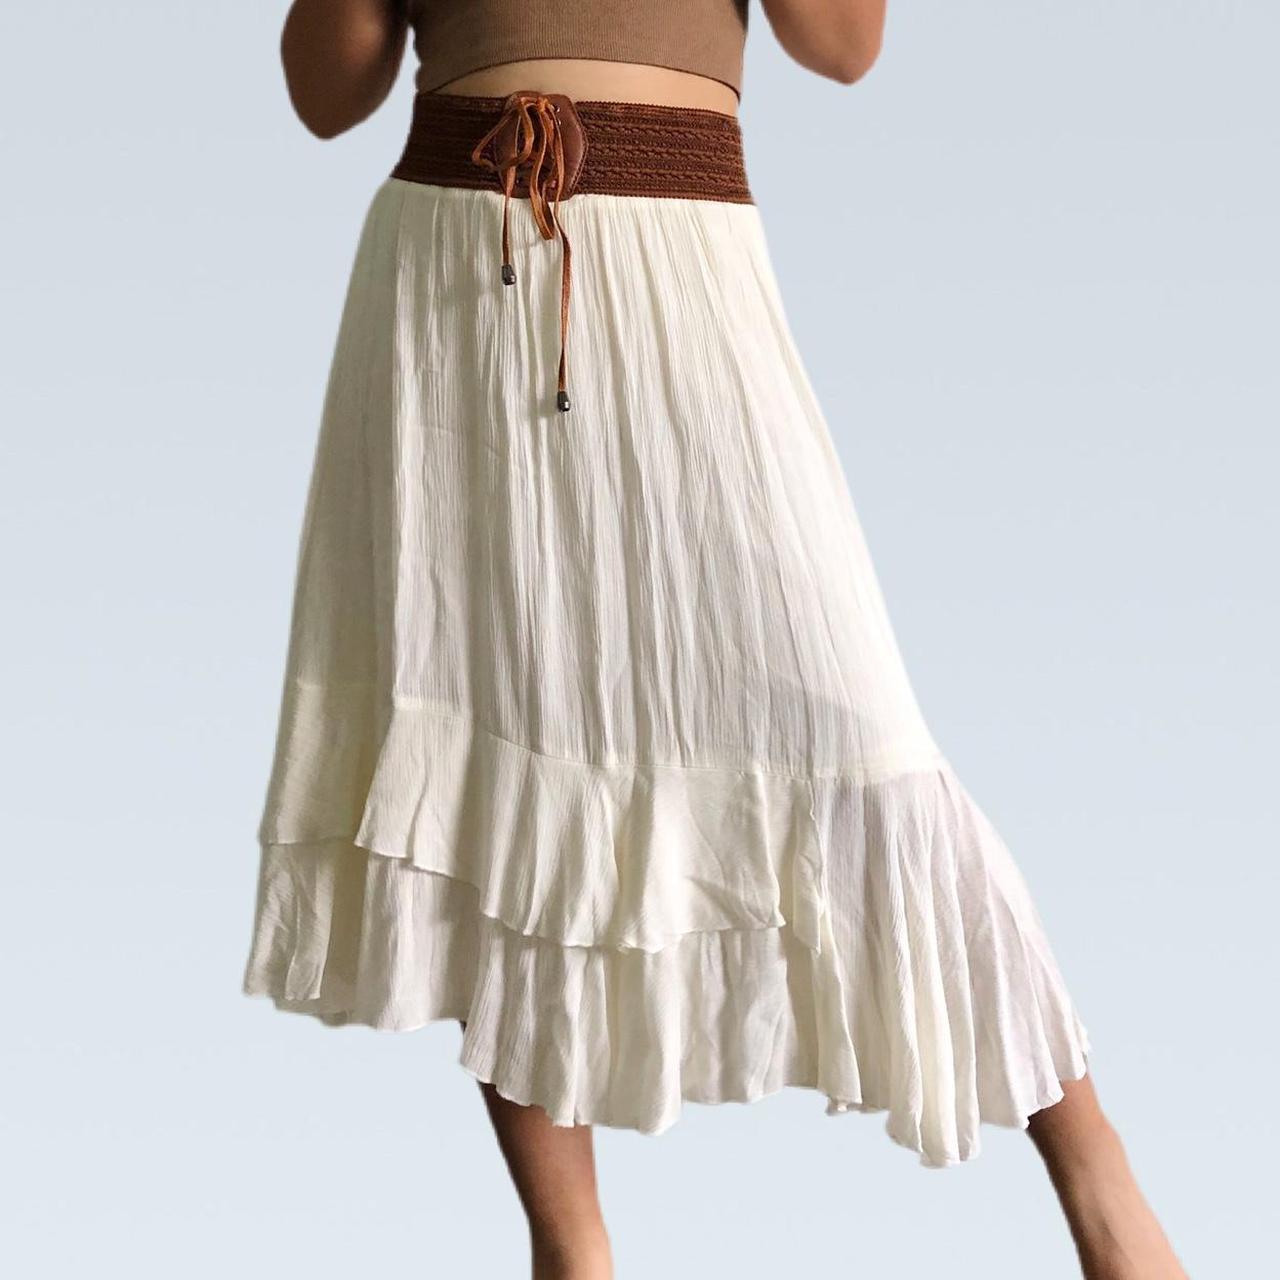 Women's Cream and Brown Skirt